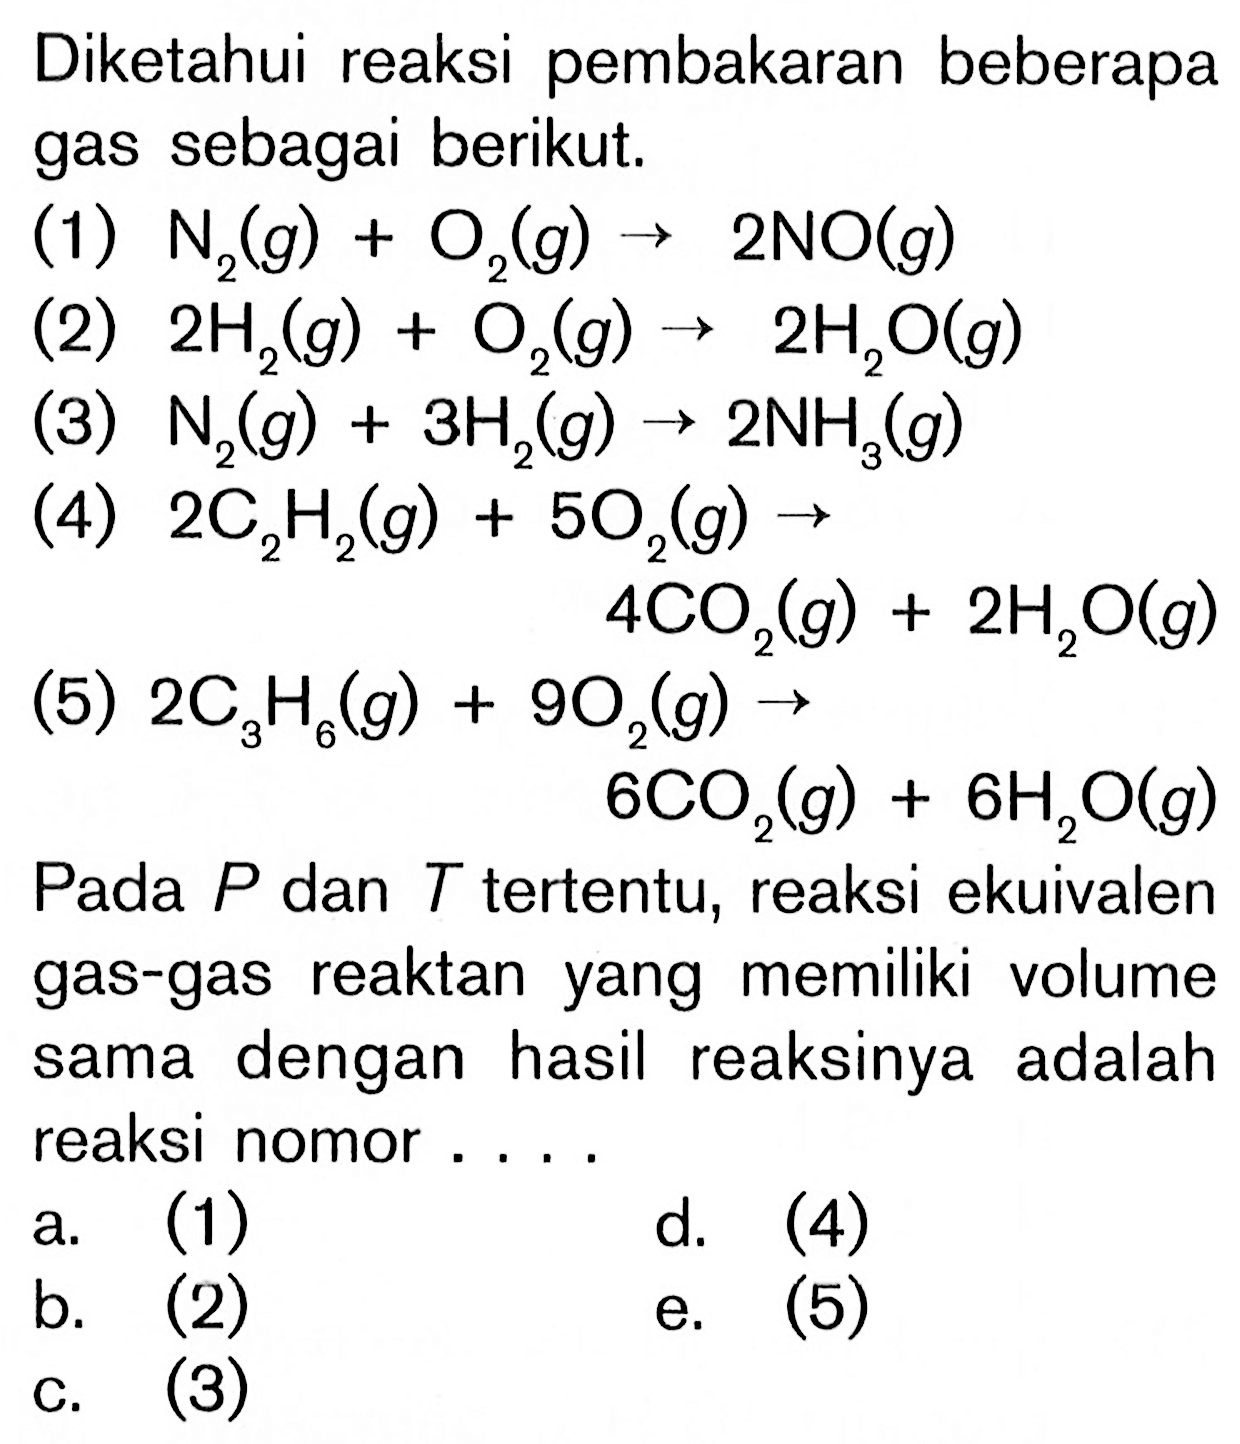 Diketahui reaksi pembakaran beberapa gas sebagai berikut. (1) N2(g) + O2(g) -> 2NO(g) (2) 2H2(g) + O2(g) -> 2H2O(g) (3) N2(g) + 3H(g) 2NH3(g) (4) 2C2H2(g) + 5O2(g) -> 4CO2(g) + 2H2O(g) (5) 2C3H6(g) + 9O2(g) -> 6CO2(g) + 6H2O(g) Pada P dan T tertentu, reaksi ekuivalen gas-gas reaktan yang memiliki volume sama dengan hasil reaksinya adalah reaksi nomor ....